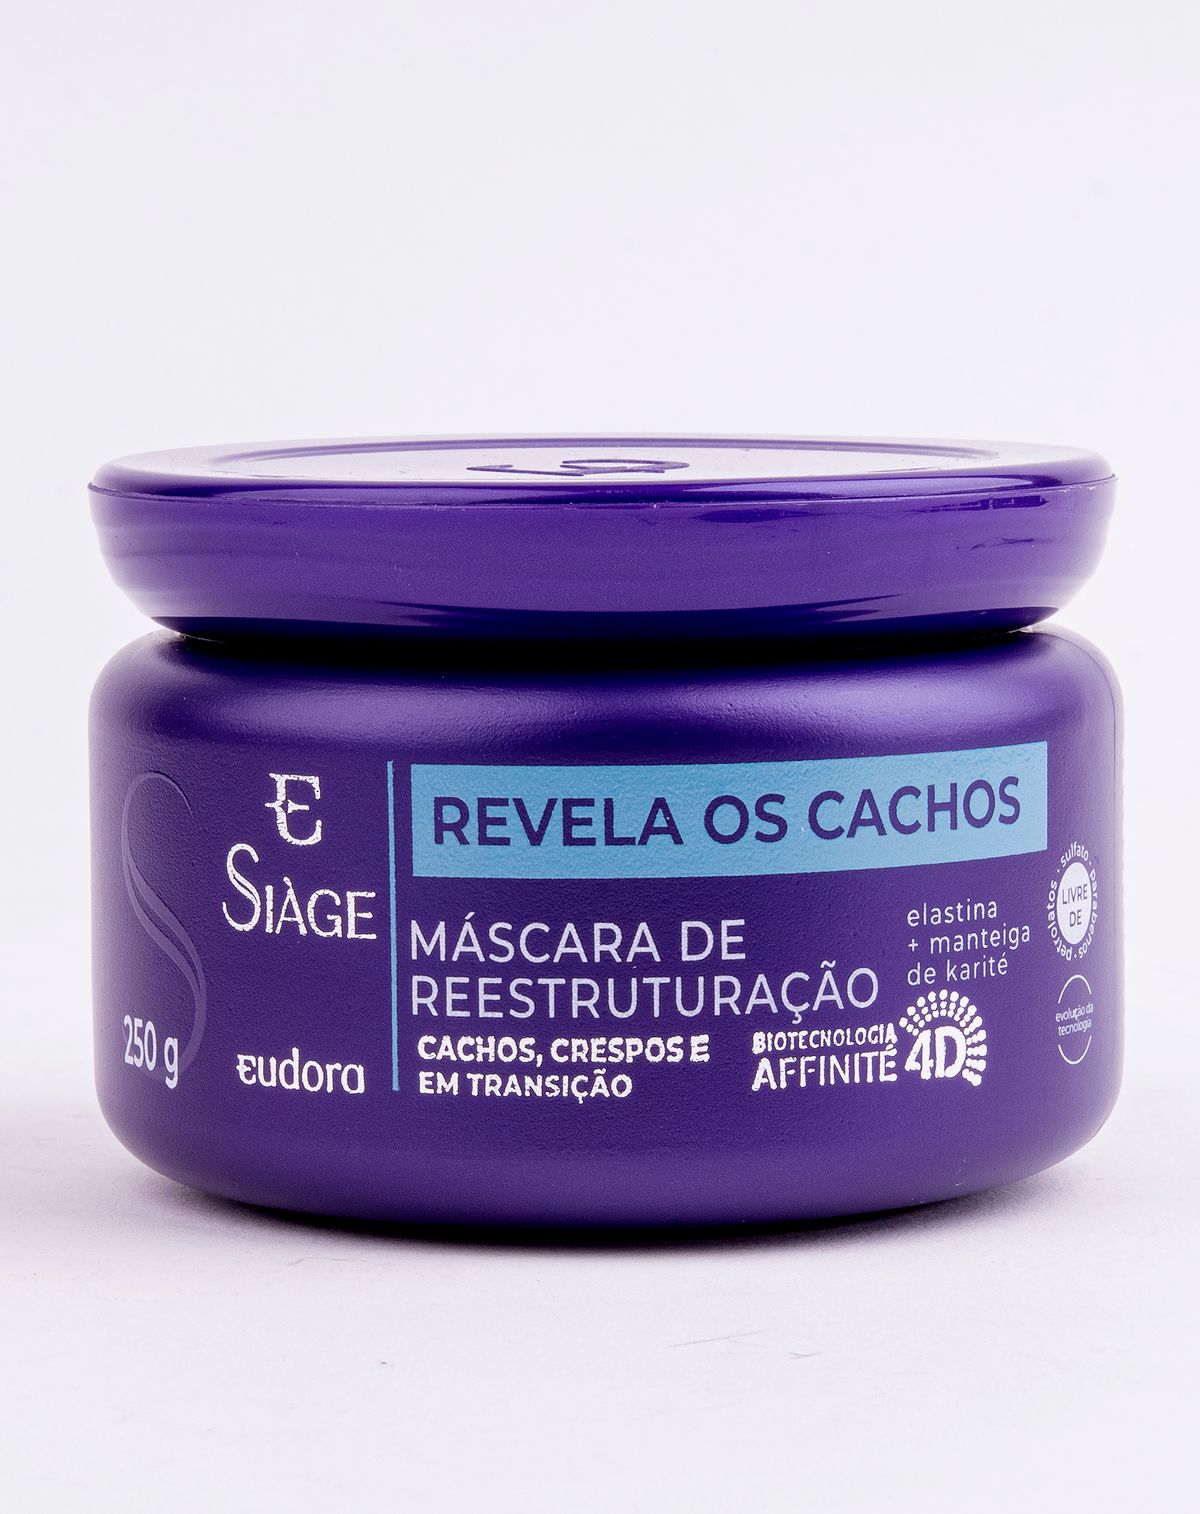 632040001-mascara-capilar-siage-revela-os-cachos-eudora-250g-unica-u-dcb